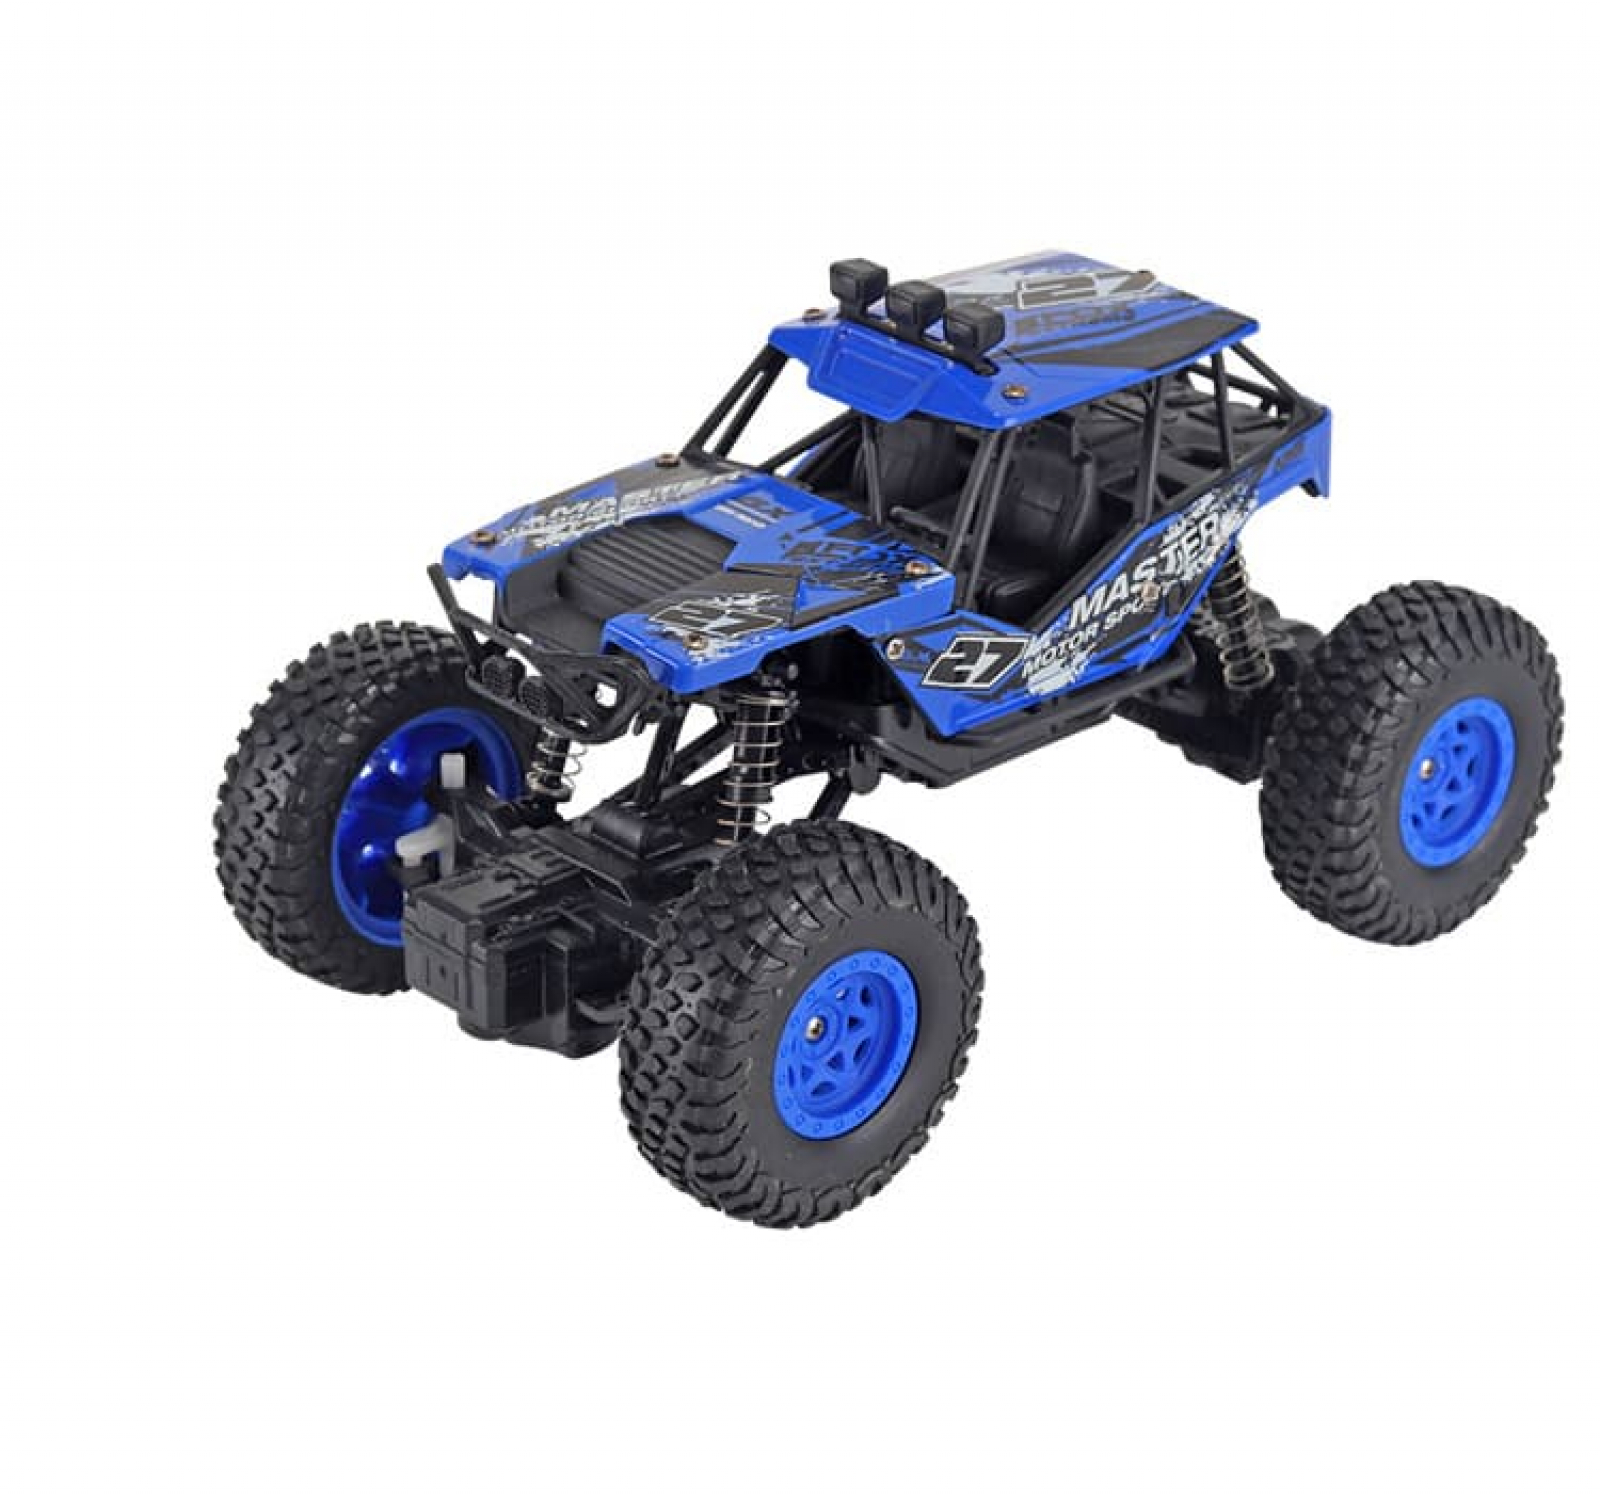 Tập hợp 500+ món đồ chơi robot xe ô tô điều khiển từ xa cho bé cao ...